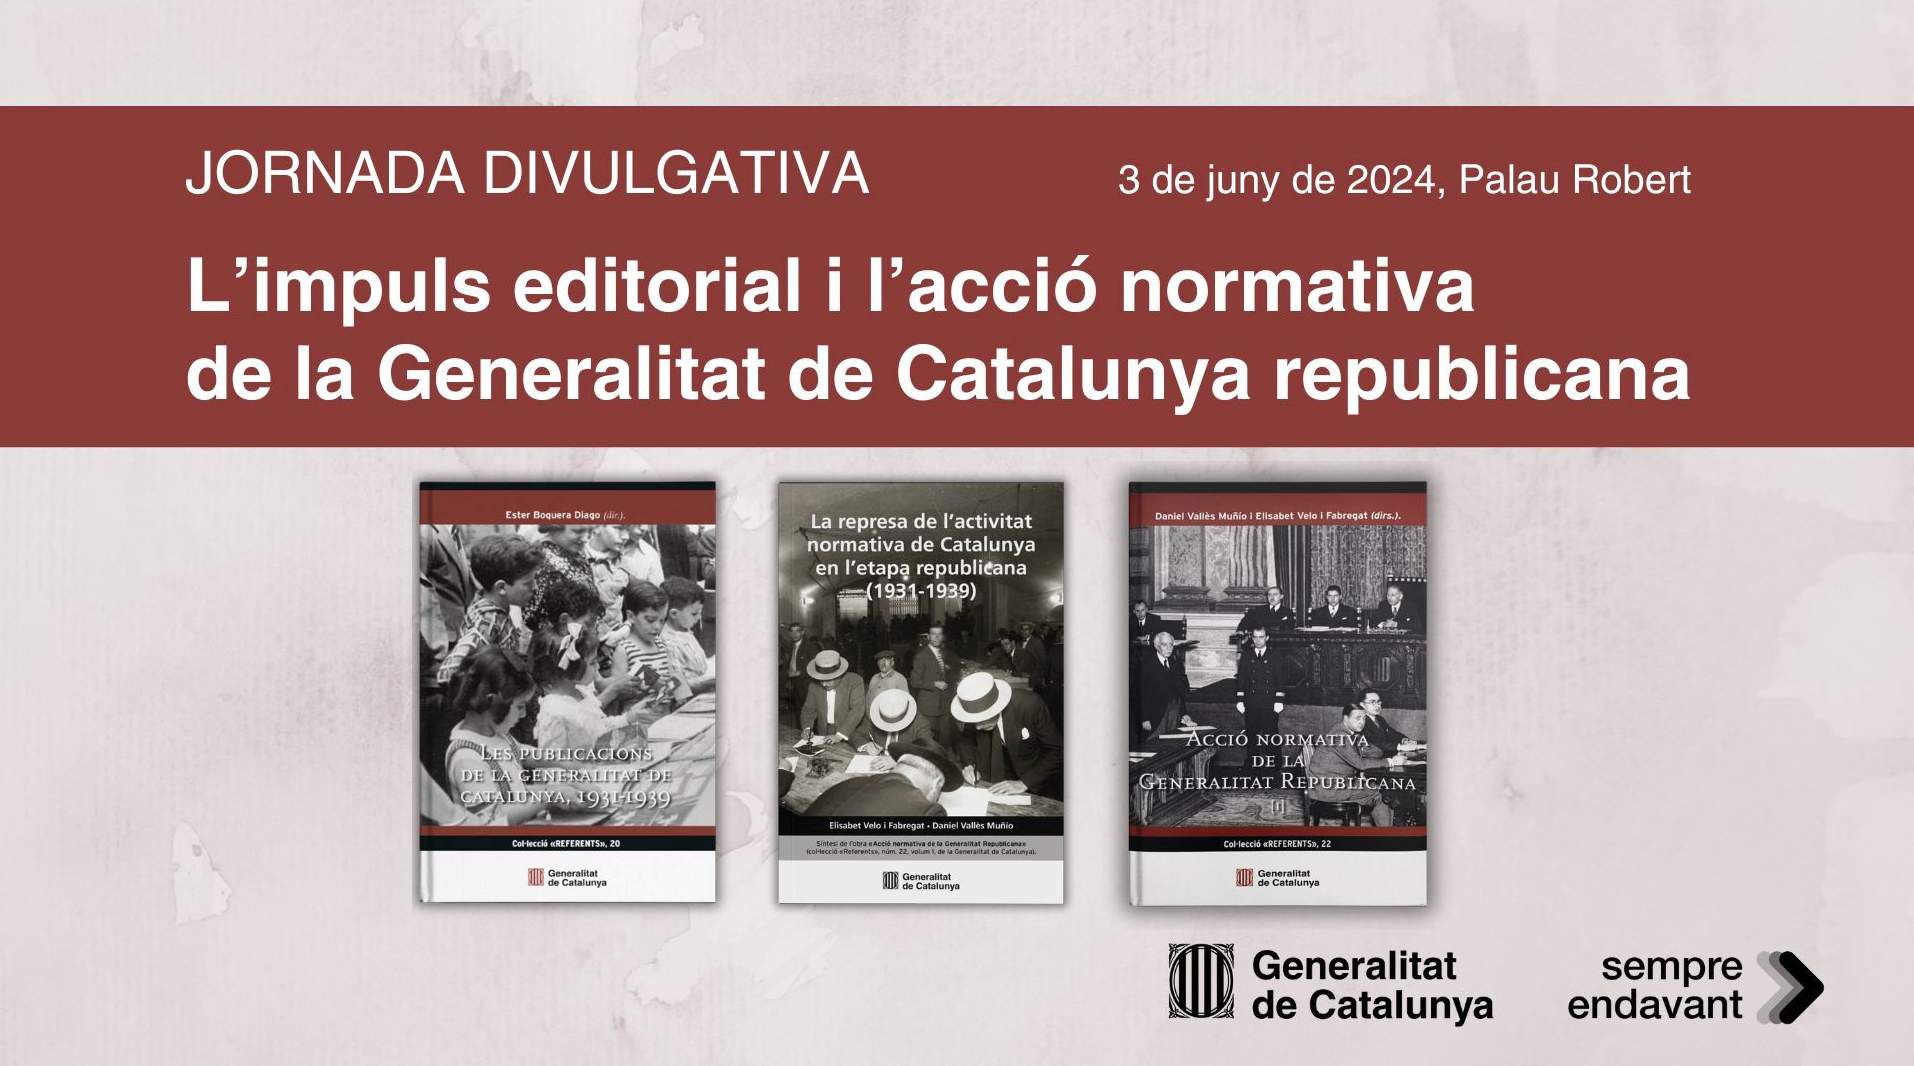 Imagen del artículo El Govern organitza una jornada de divulgació sobre l'acció editorial i normativa de la Generalitat republicana